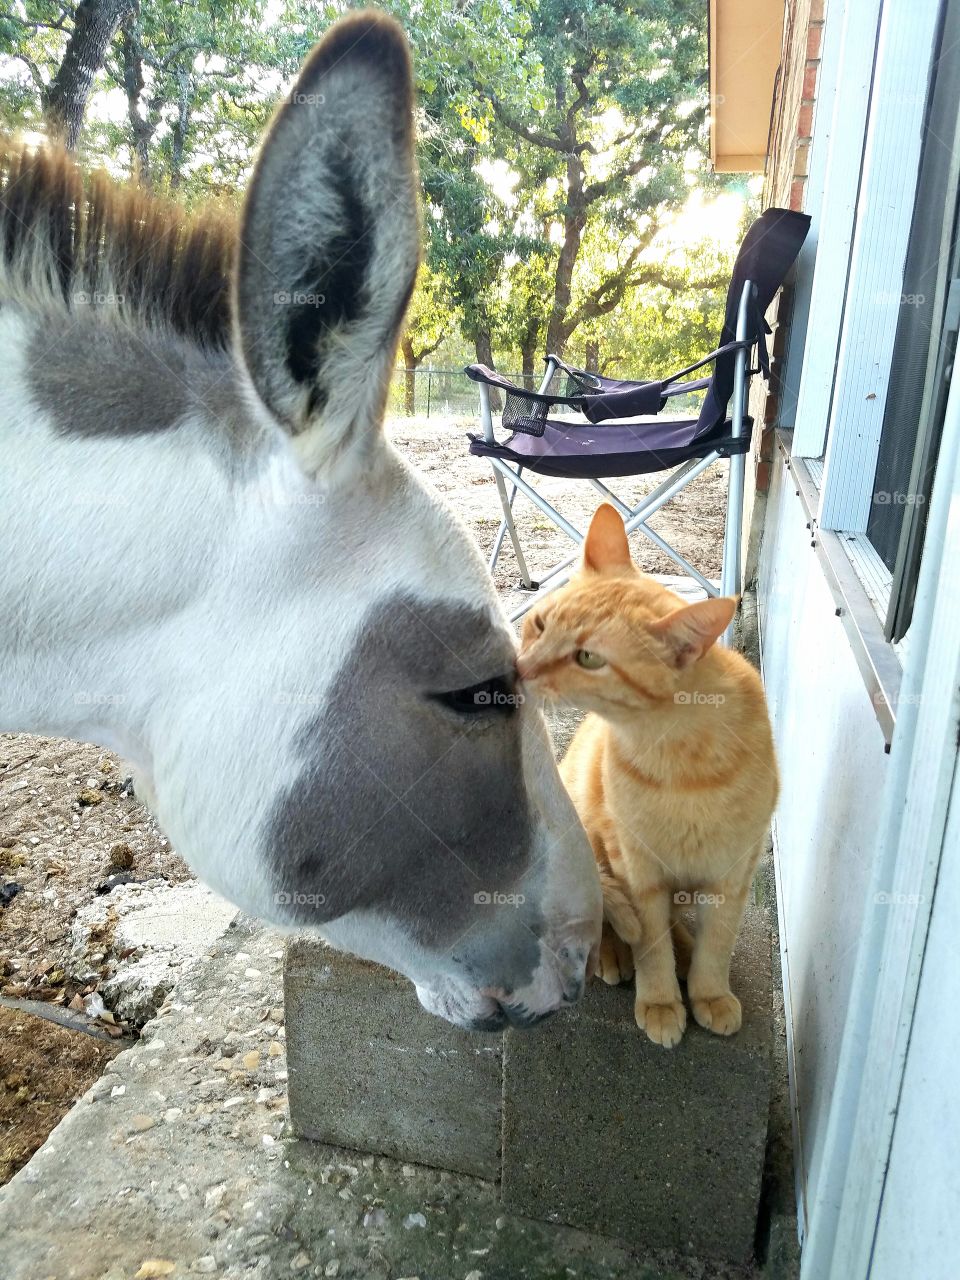 donkey and kitty